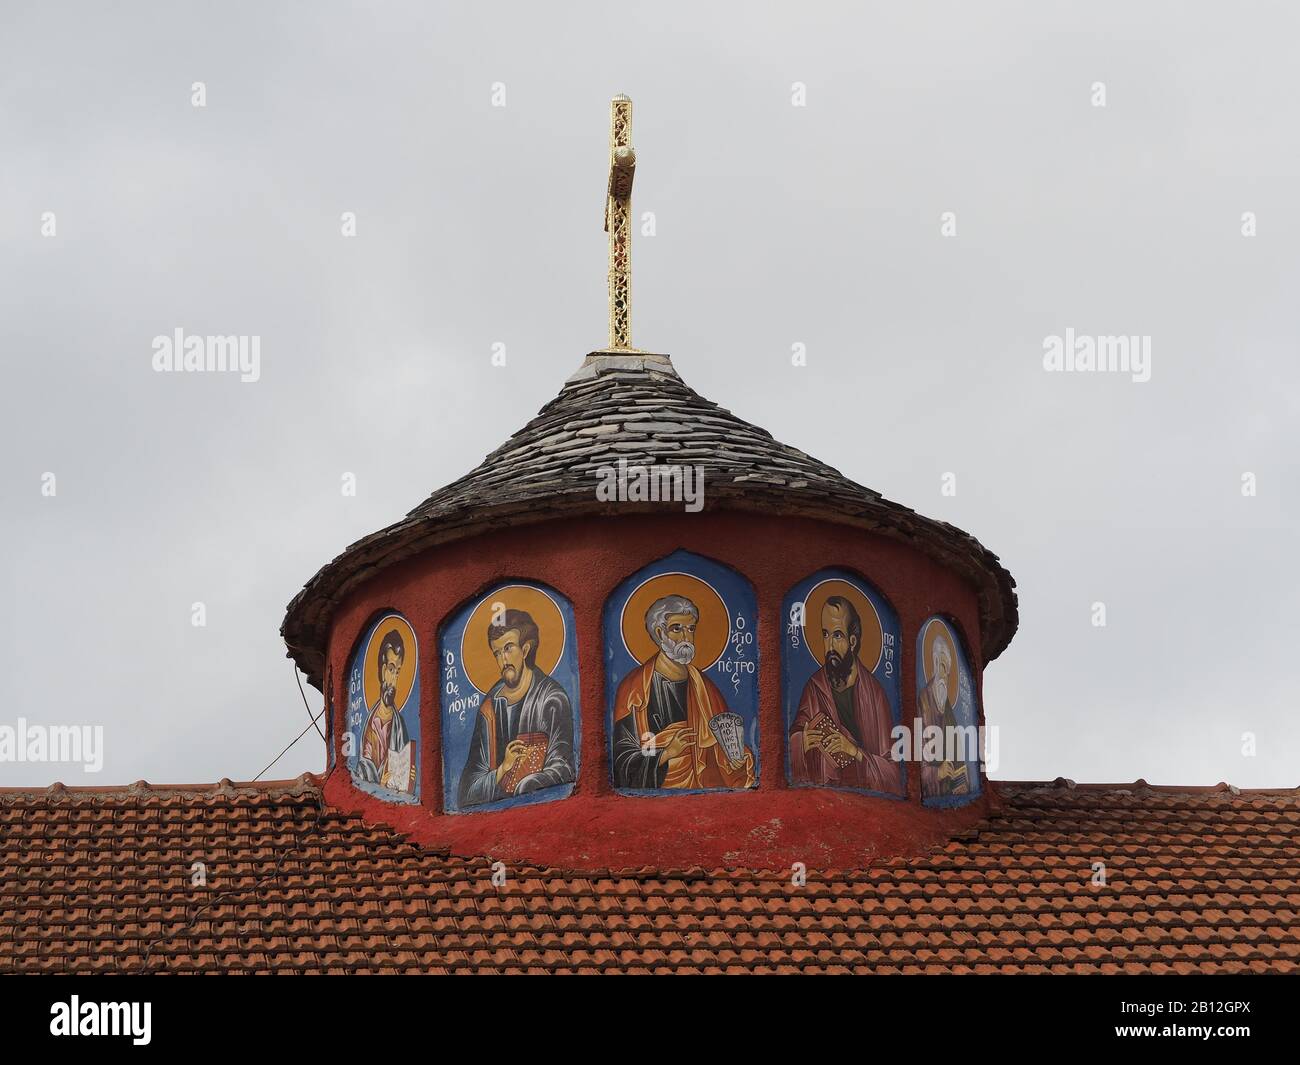 Bemalte Kuppel der Kirche des heiligen Dimitrius von Saloniki in Agios Dimitrios, Pieria, Griechenland, die fünf Heilige mit dem heiligen Petrus im Zentrum zeigt. Stockfoto